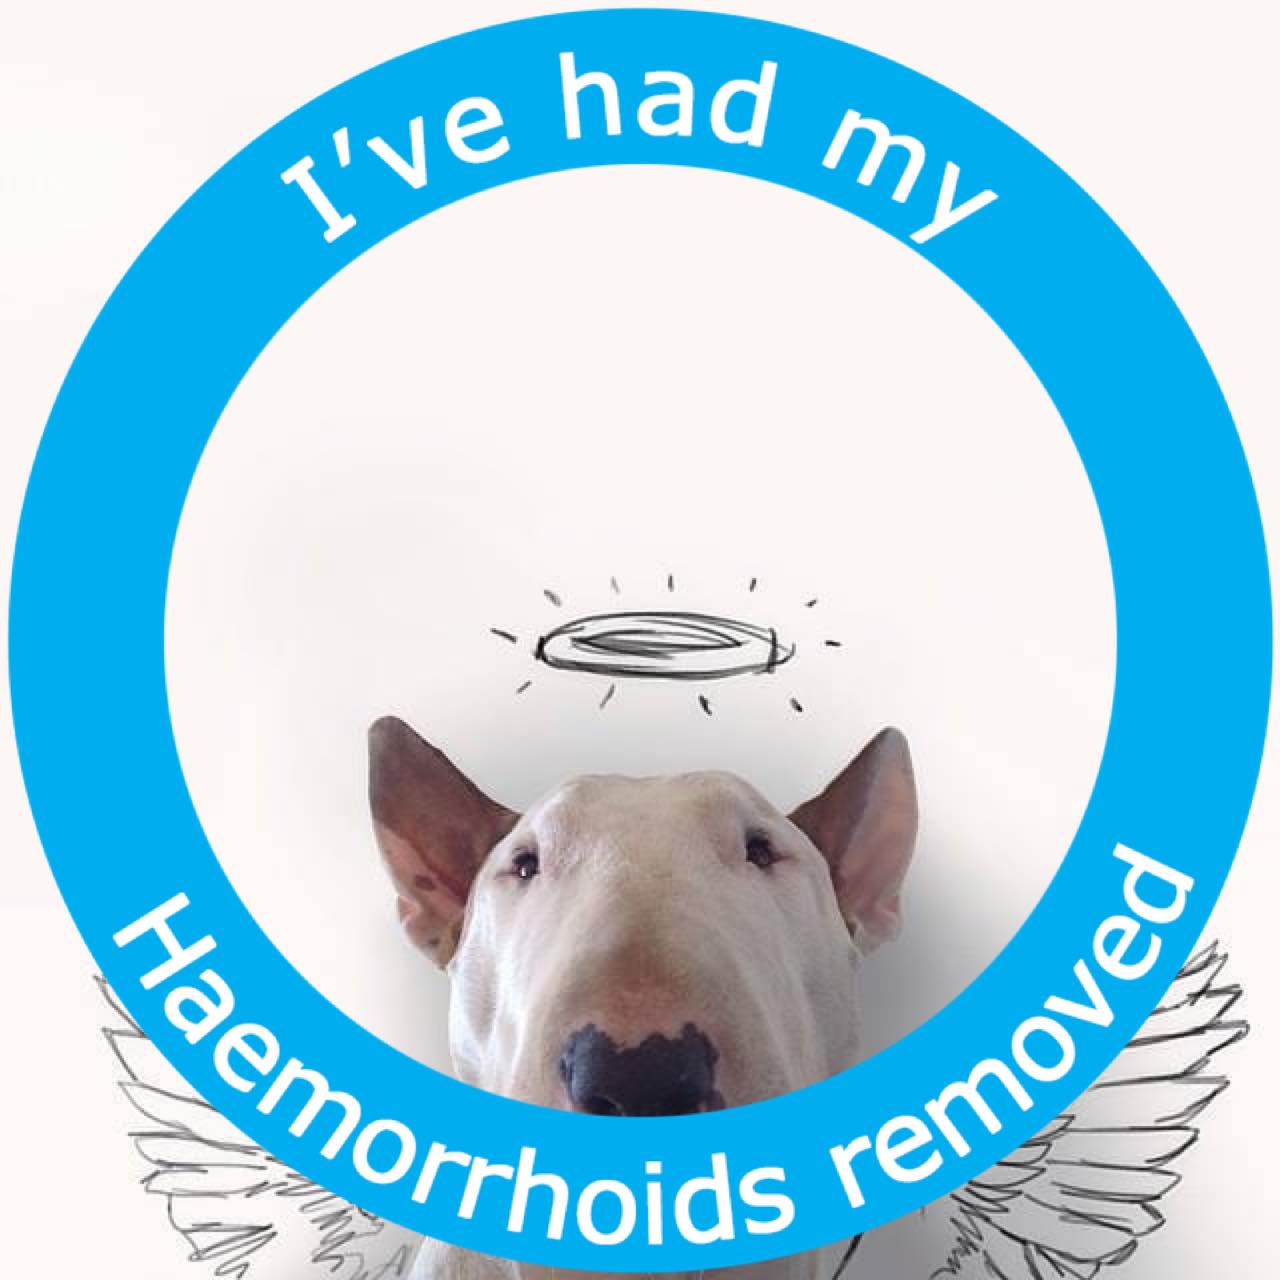 haemorrhoids_removed_pride.jpg